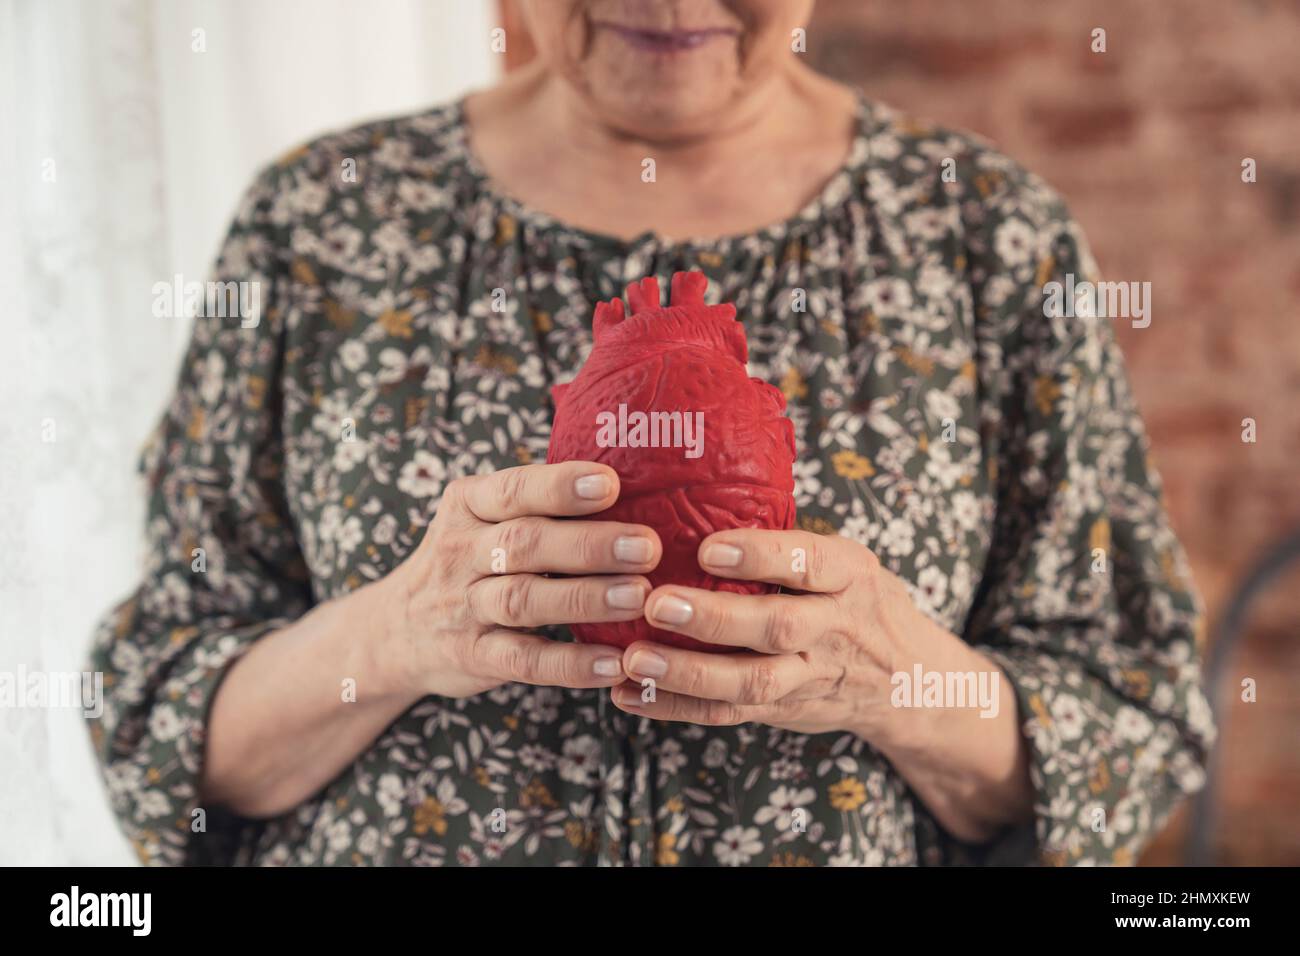 Ältere Menschen mit künstlichem Herz erinnern an gesundheitliche Probleme, Krankheiten und Herz-Kreislauf-Erkrankungen. Hochwertige Fotos Stockfoto